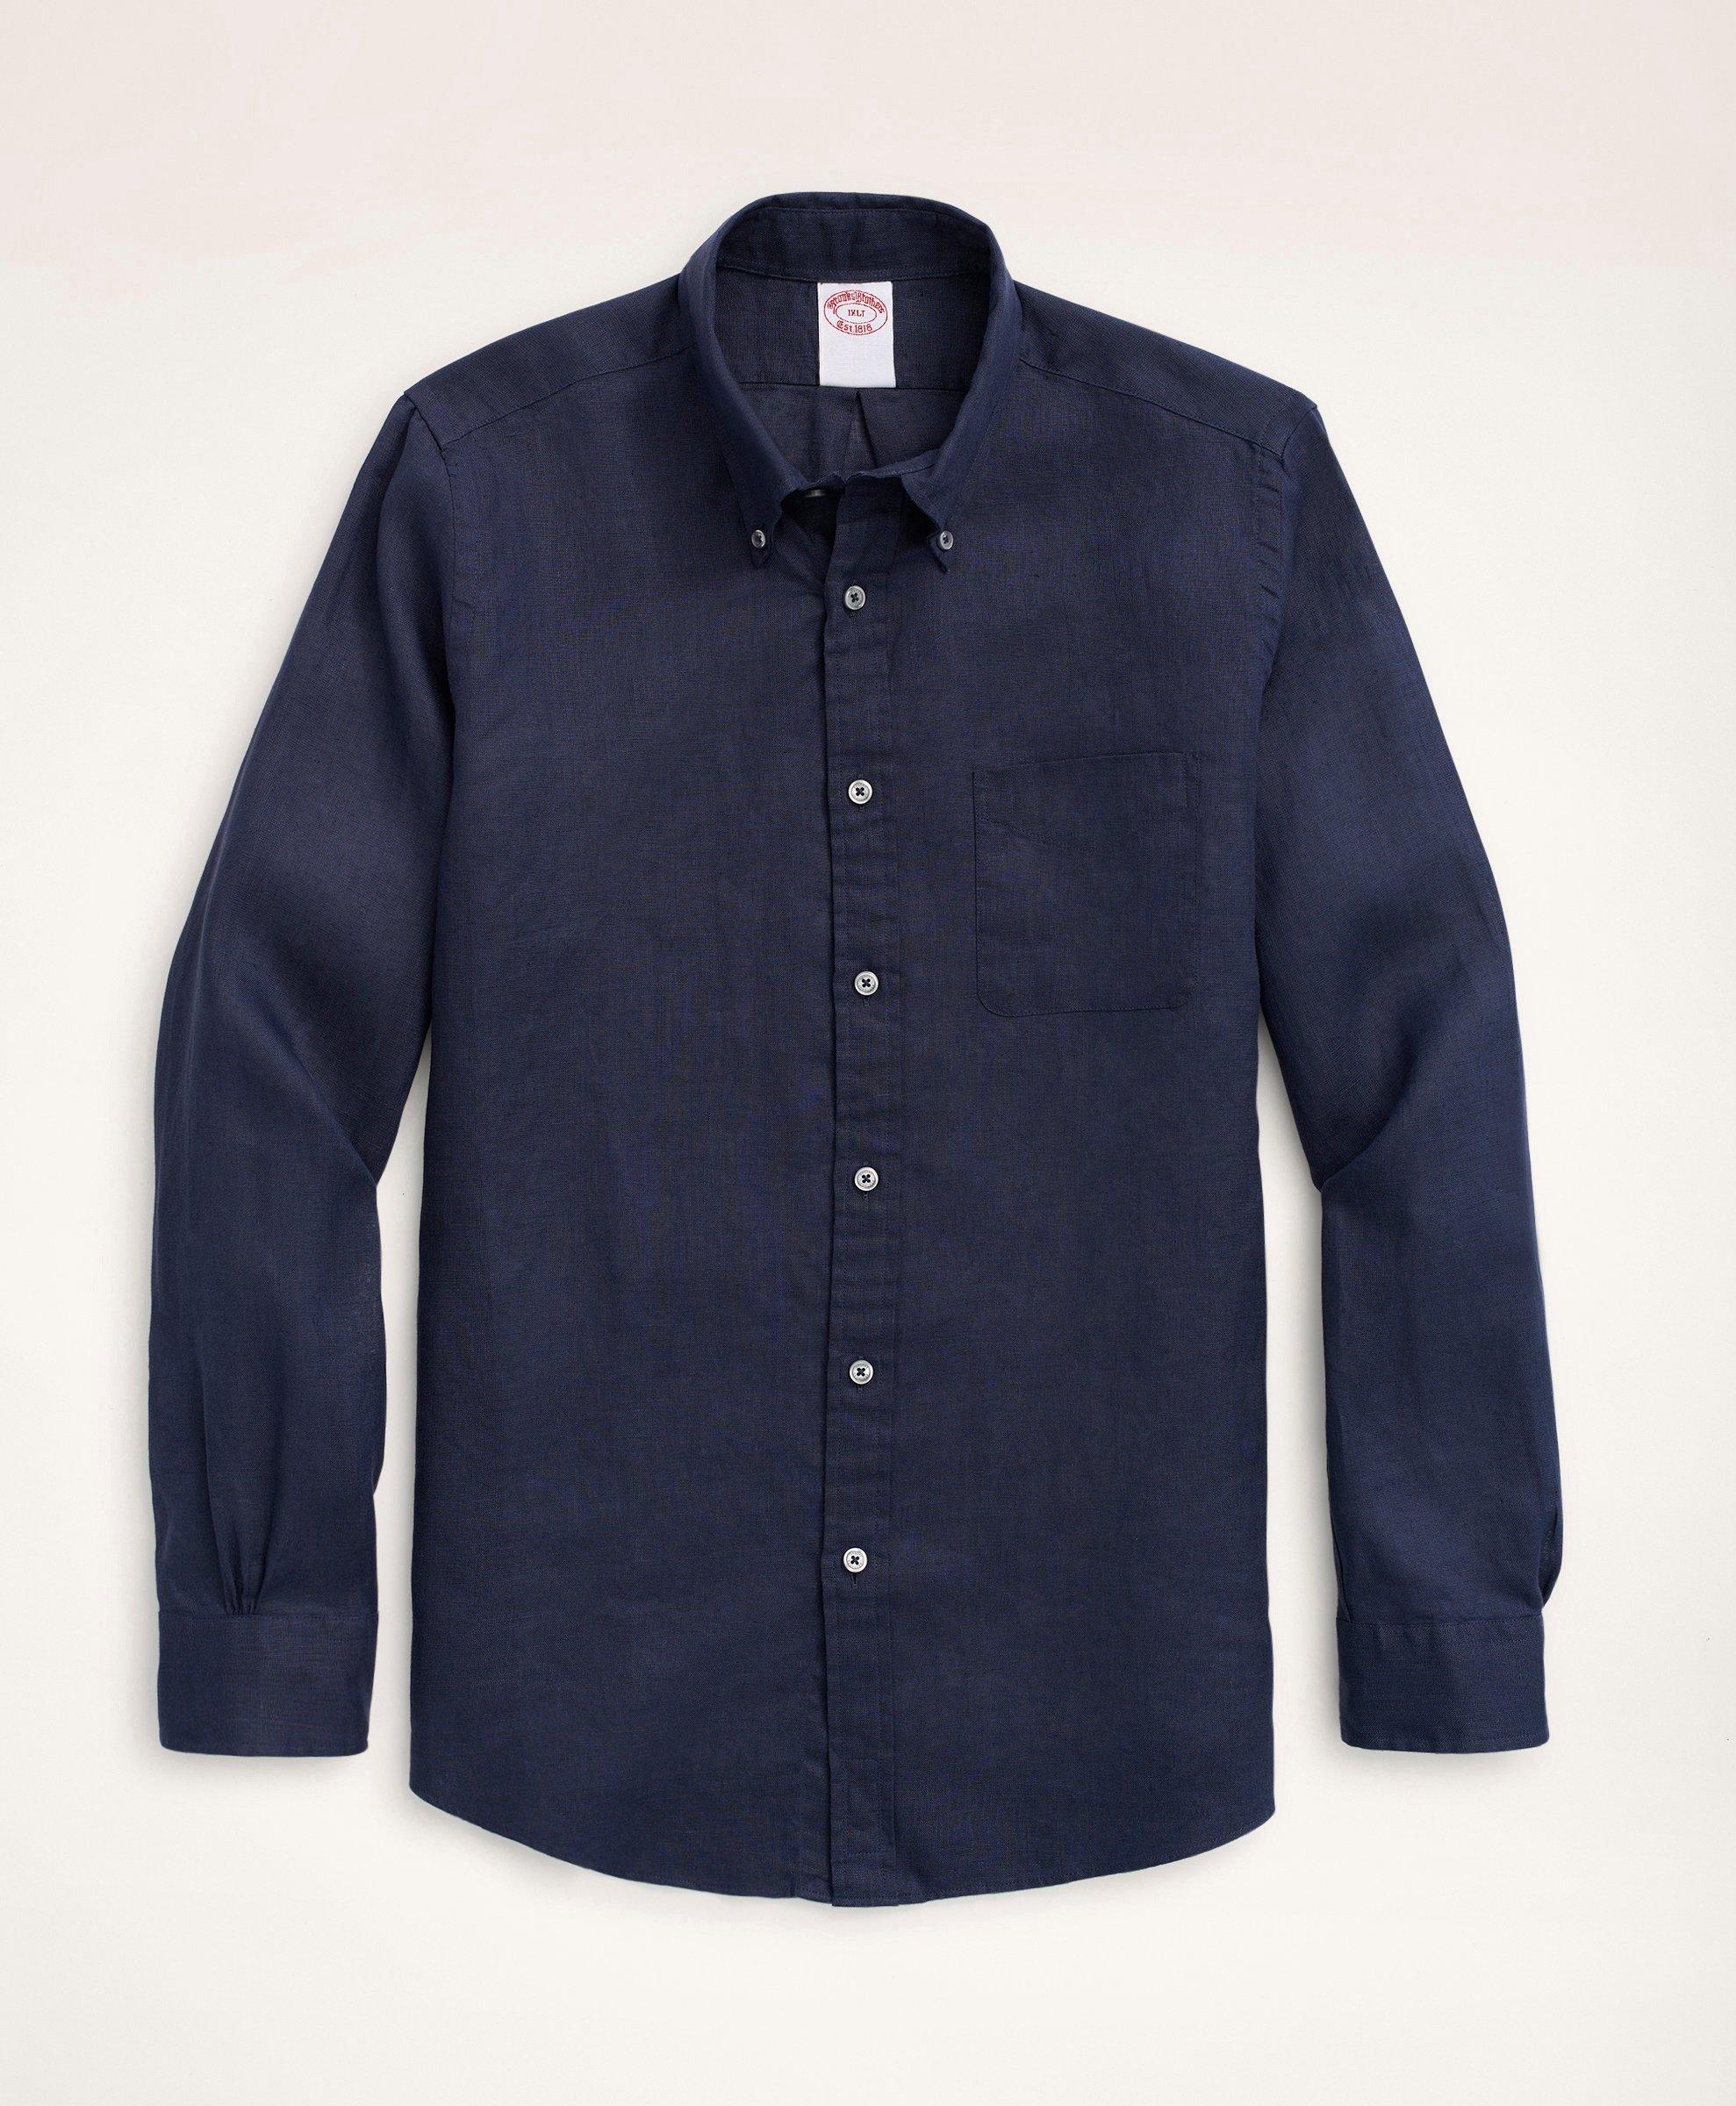 Brooks Brothers Big & Tall Sport Shirt, Irish Linen | Navy | Size 5x